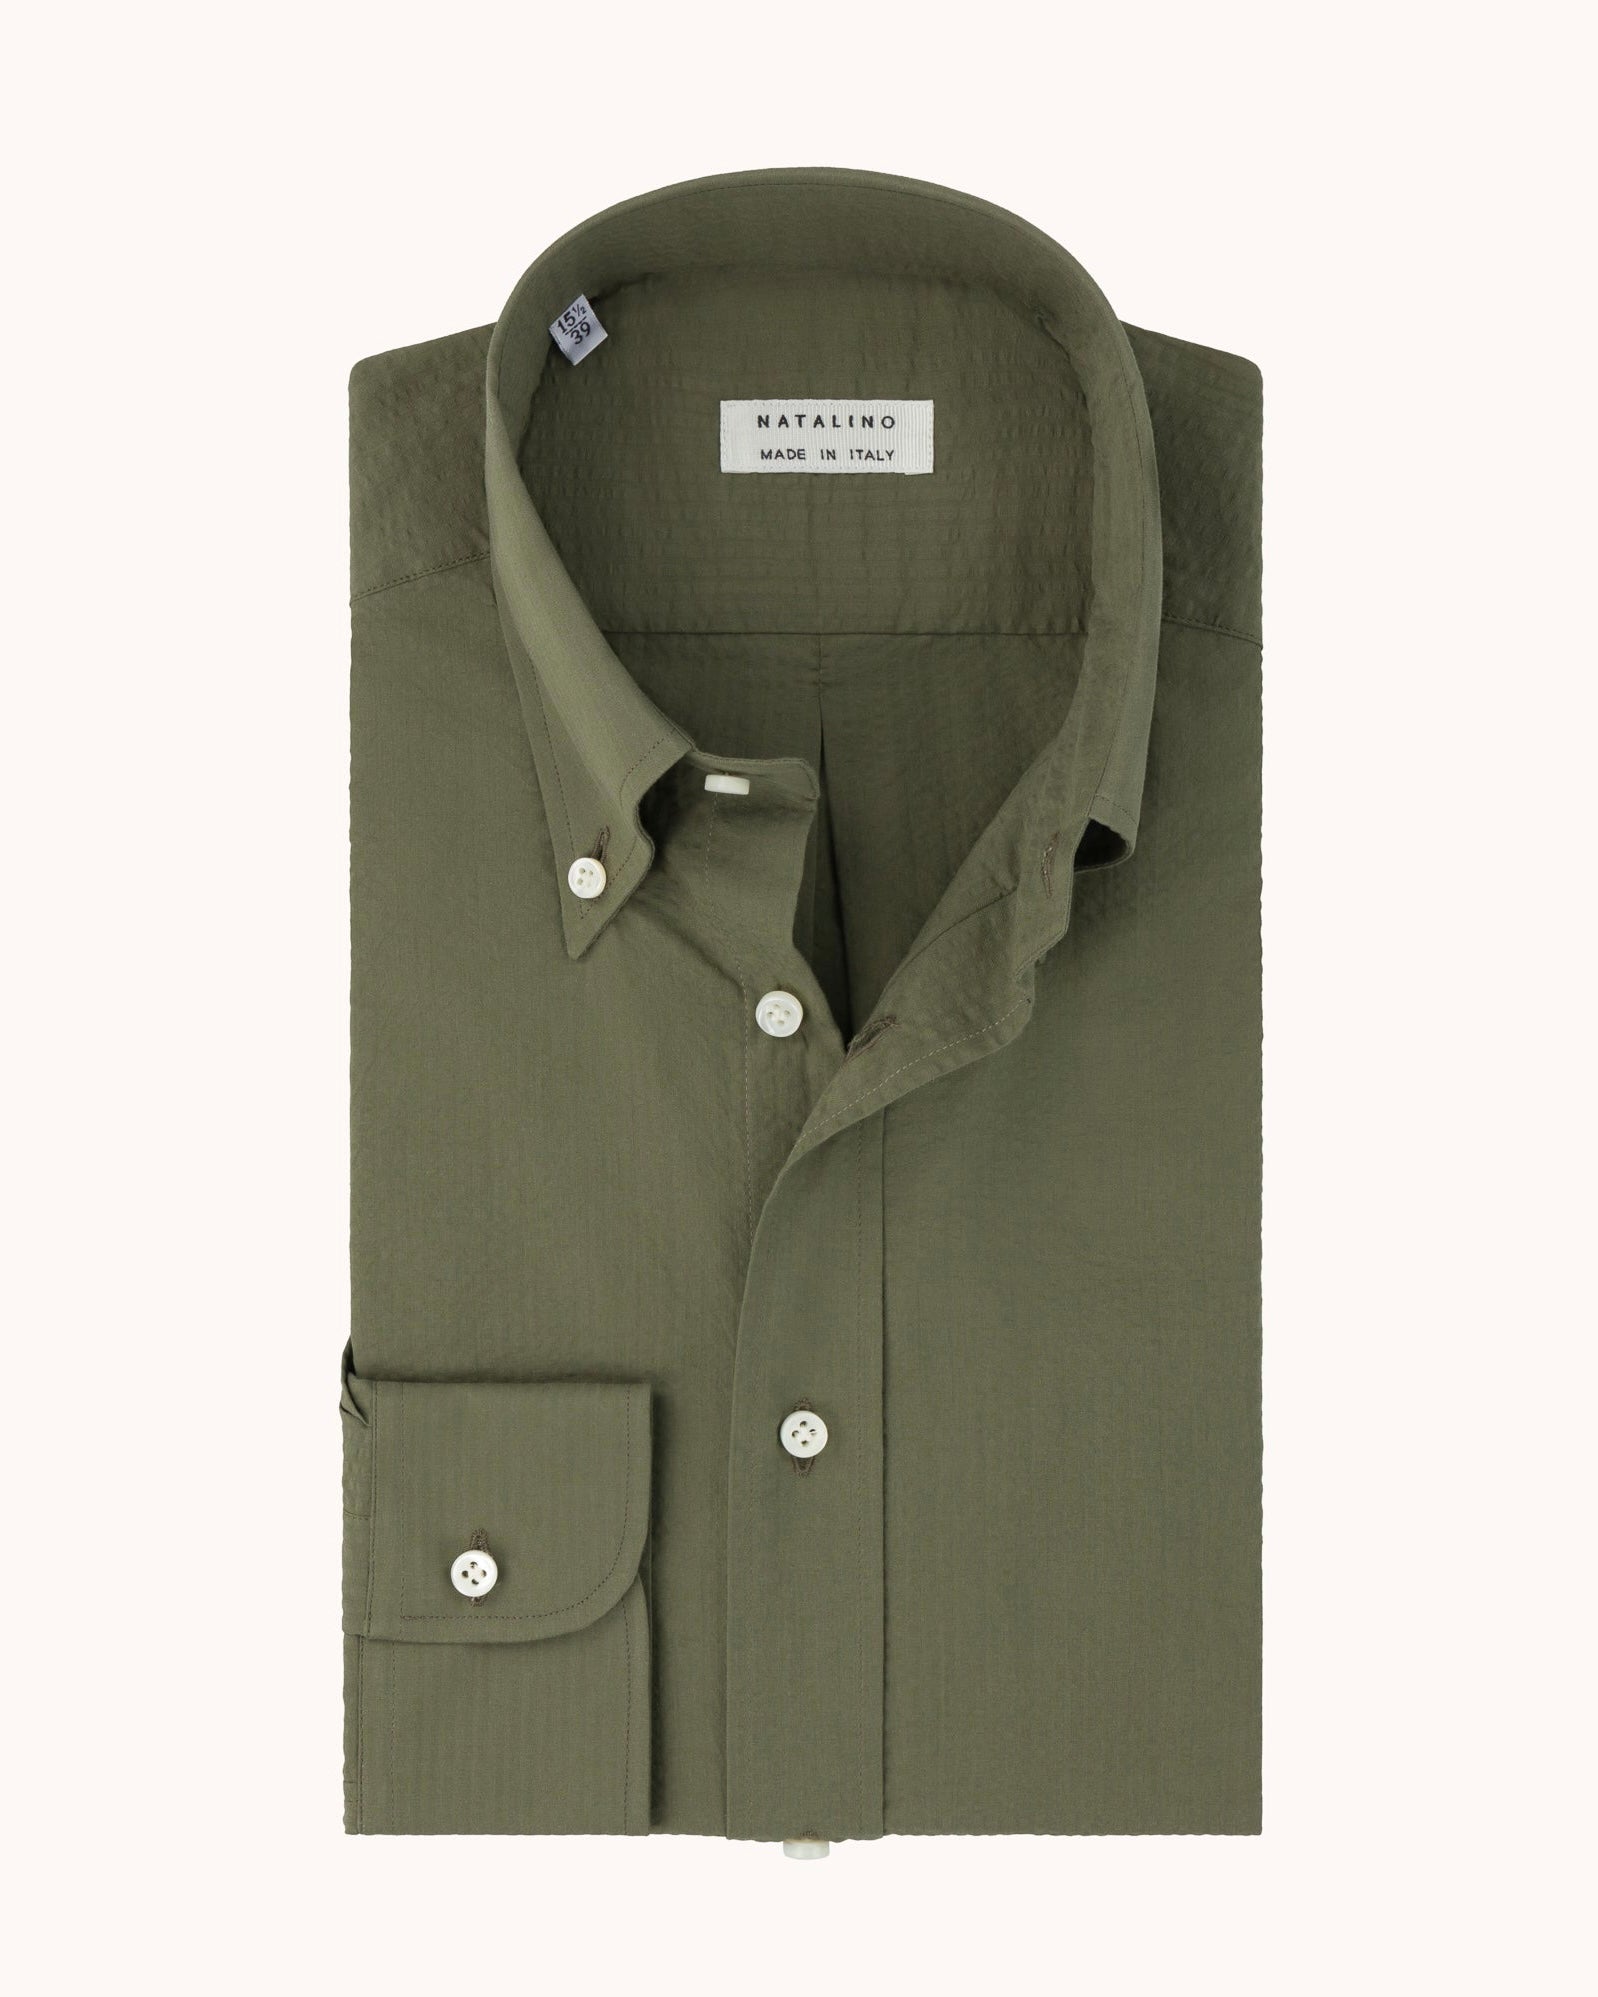 Button Down Collar Shirt - Olive Green Cotton Seersucker